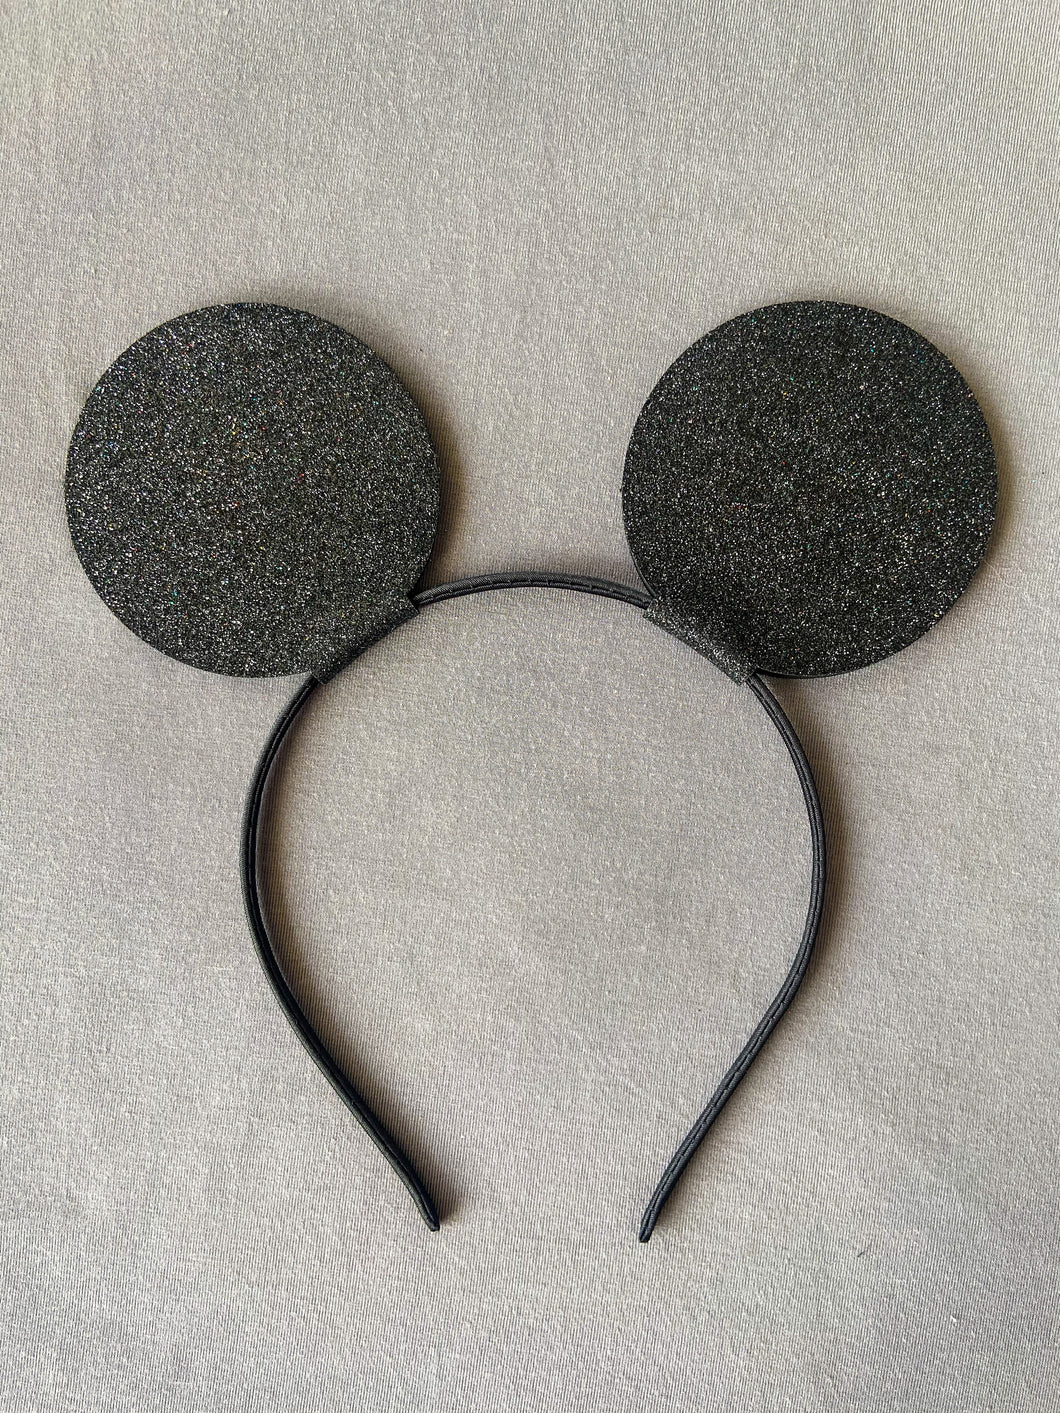 Mickey Mouse headband